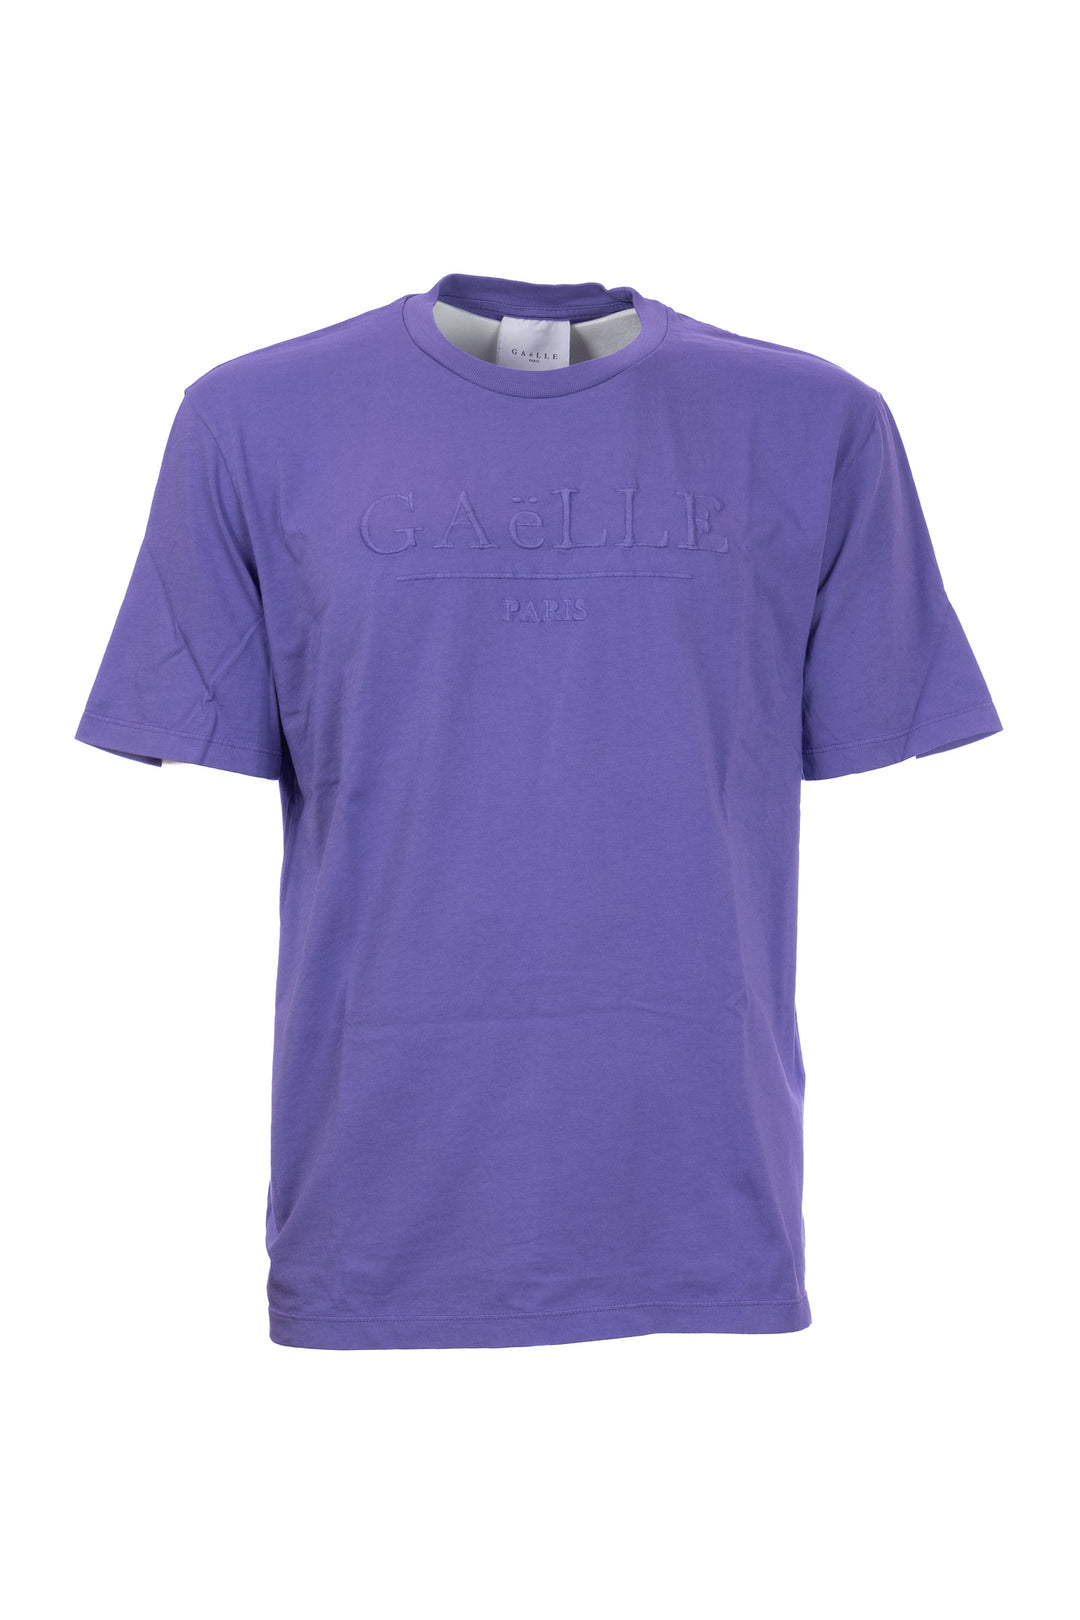 GAELLE T-shirt viola in cotone con logo grande ricamato - Mancinelli 1954